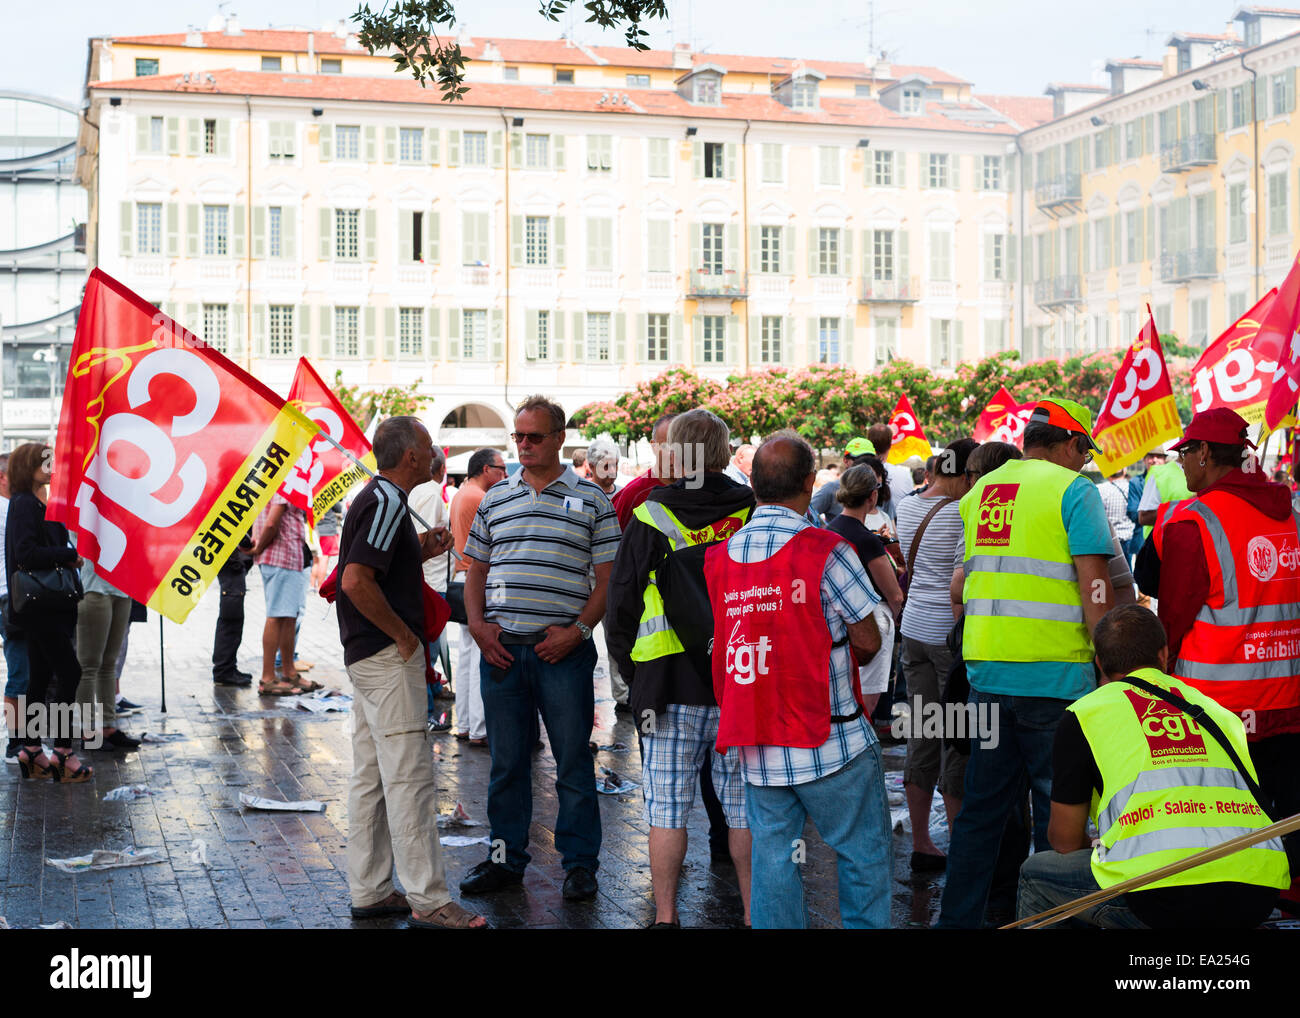 Des démonstrations de la CGT syndicate sur la Place Garibaldi, Nice, France. Banque D'Images